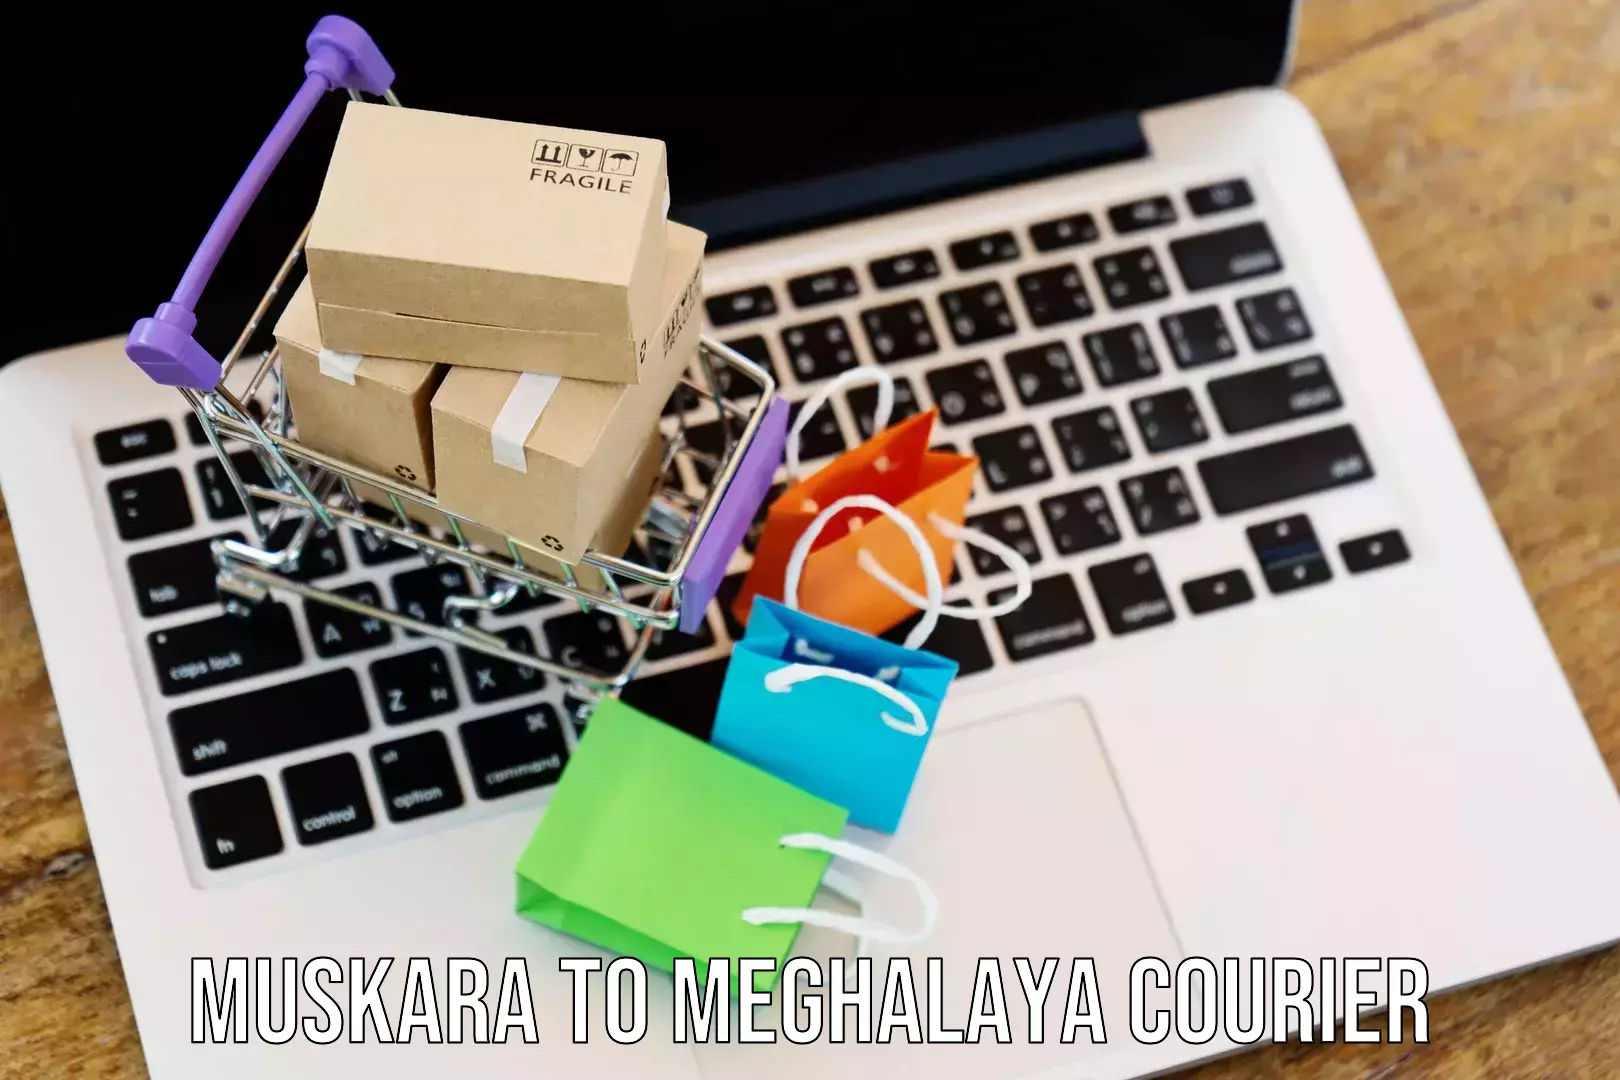 Efficient shipping platforms in Muskara to Meghalaya